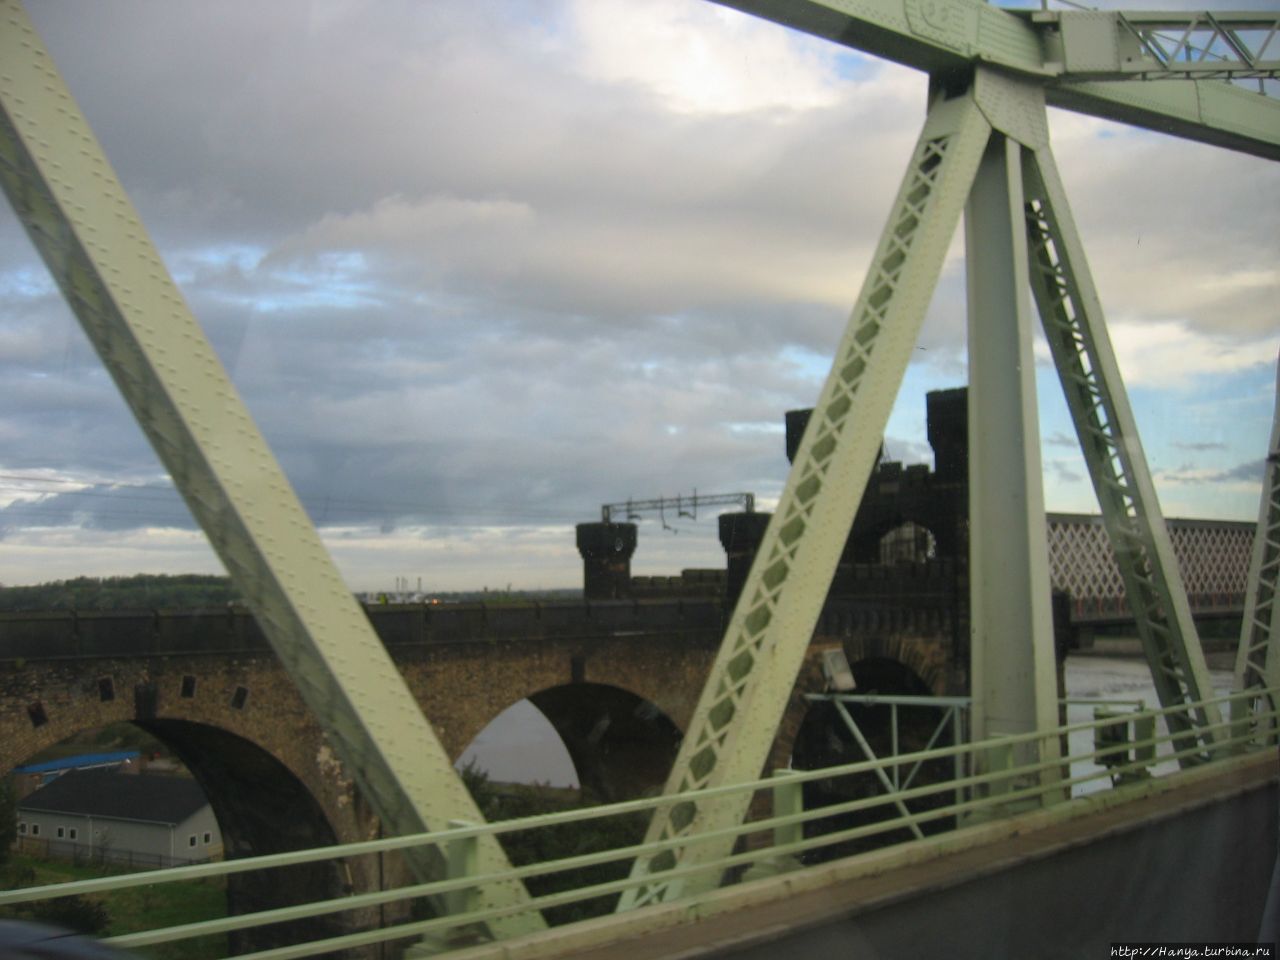 Два моста Ранкорн через реку Мерси Ливерпуль, Великобритания